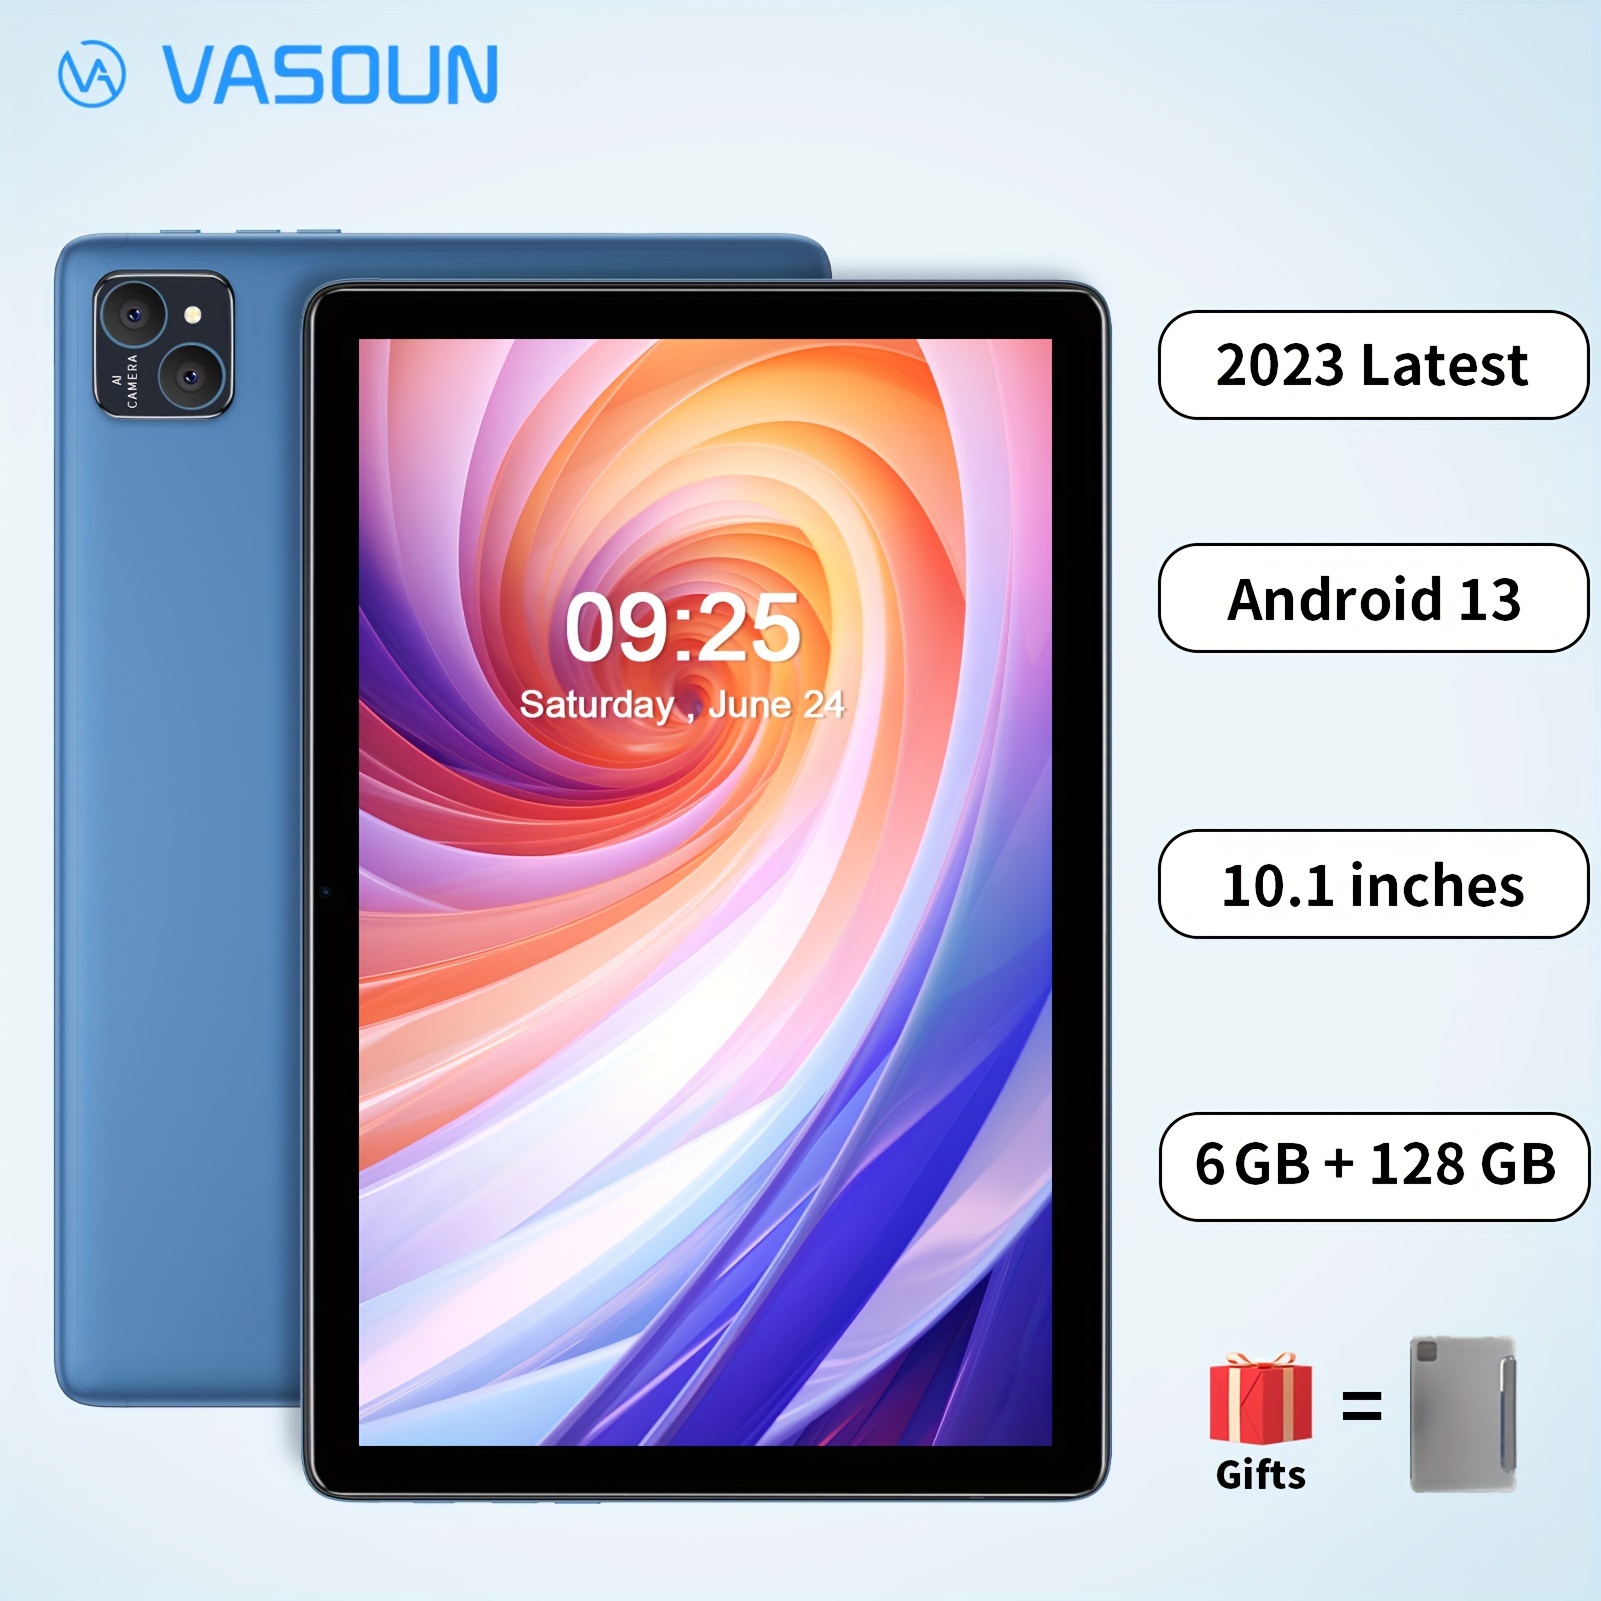 VASOUN 10 インチタブレット Android 13 用、ケース付きタブレット PC、(6GB+6GB 拡張)*、128GB ROM、マイクロ  SD 拡張サポート、8000Mah バッテリー、8 コアプロセッサ、10 インチタブレット IPS HD ディスプレイ、デュアルカメラ、Wi-Fi